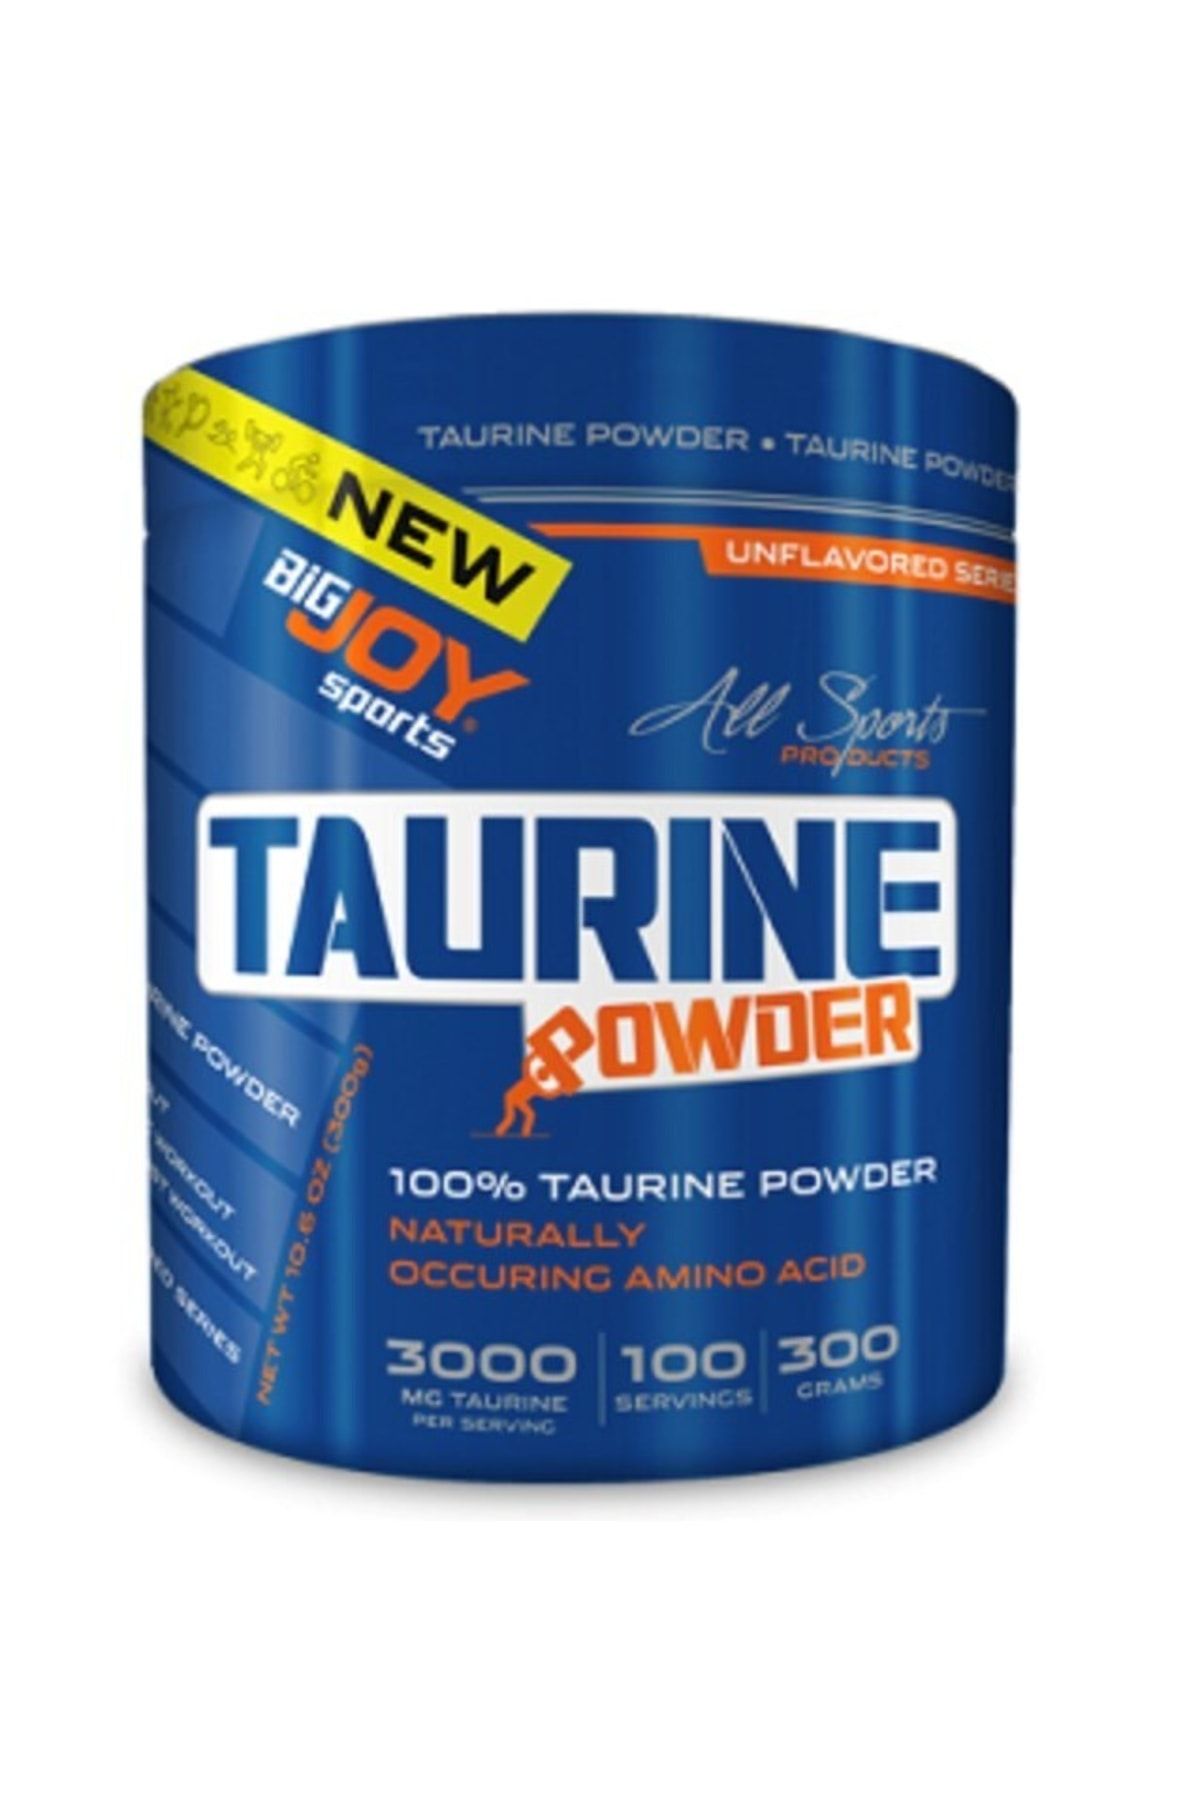 Big Joy Taurine Powder 300 Gr